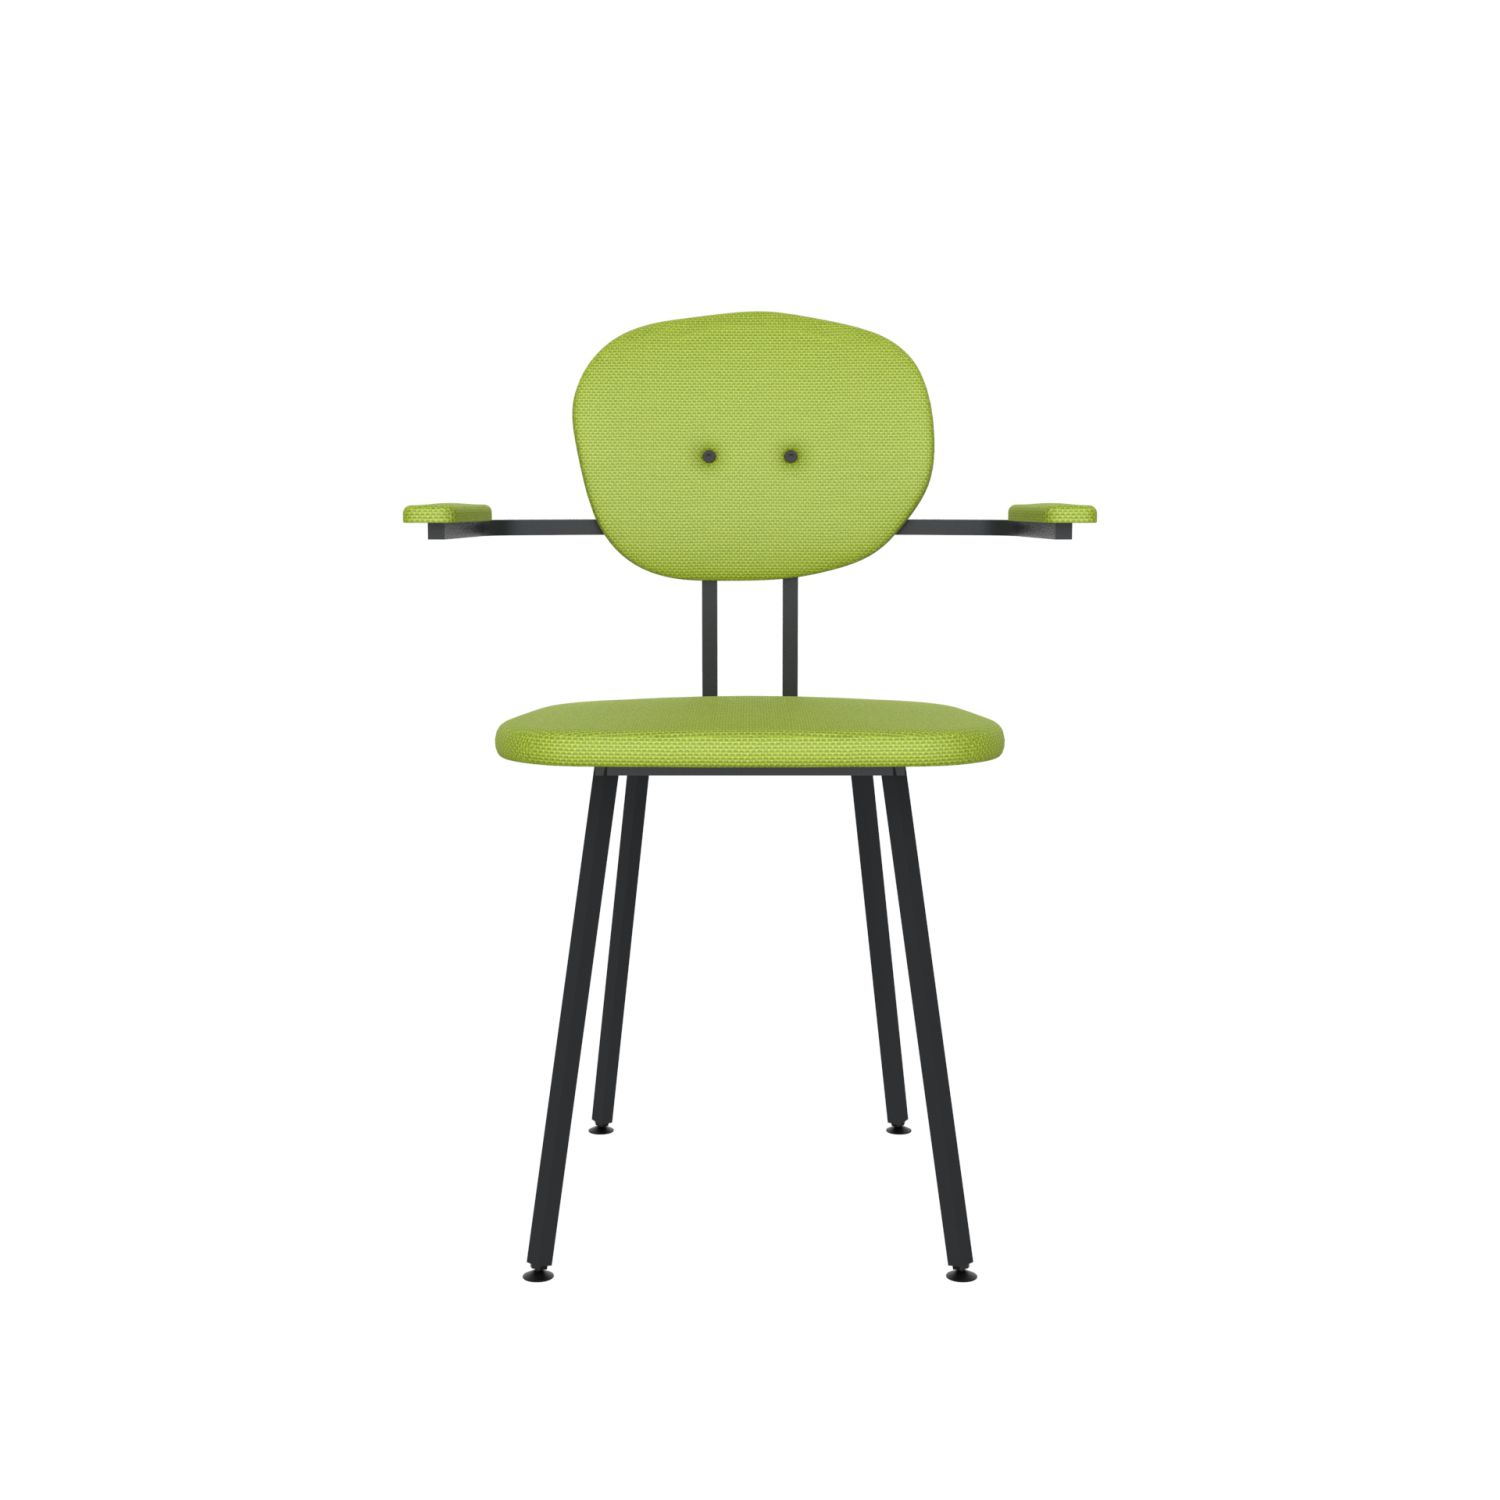 lensvelt maarten baas chair 102 not stackable with armrests backrest a fairway green 020 black ral9005 hard leg ends